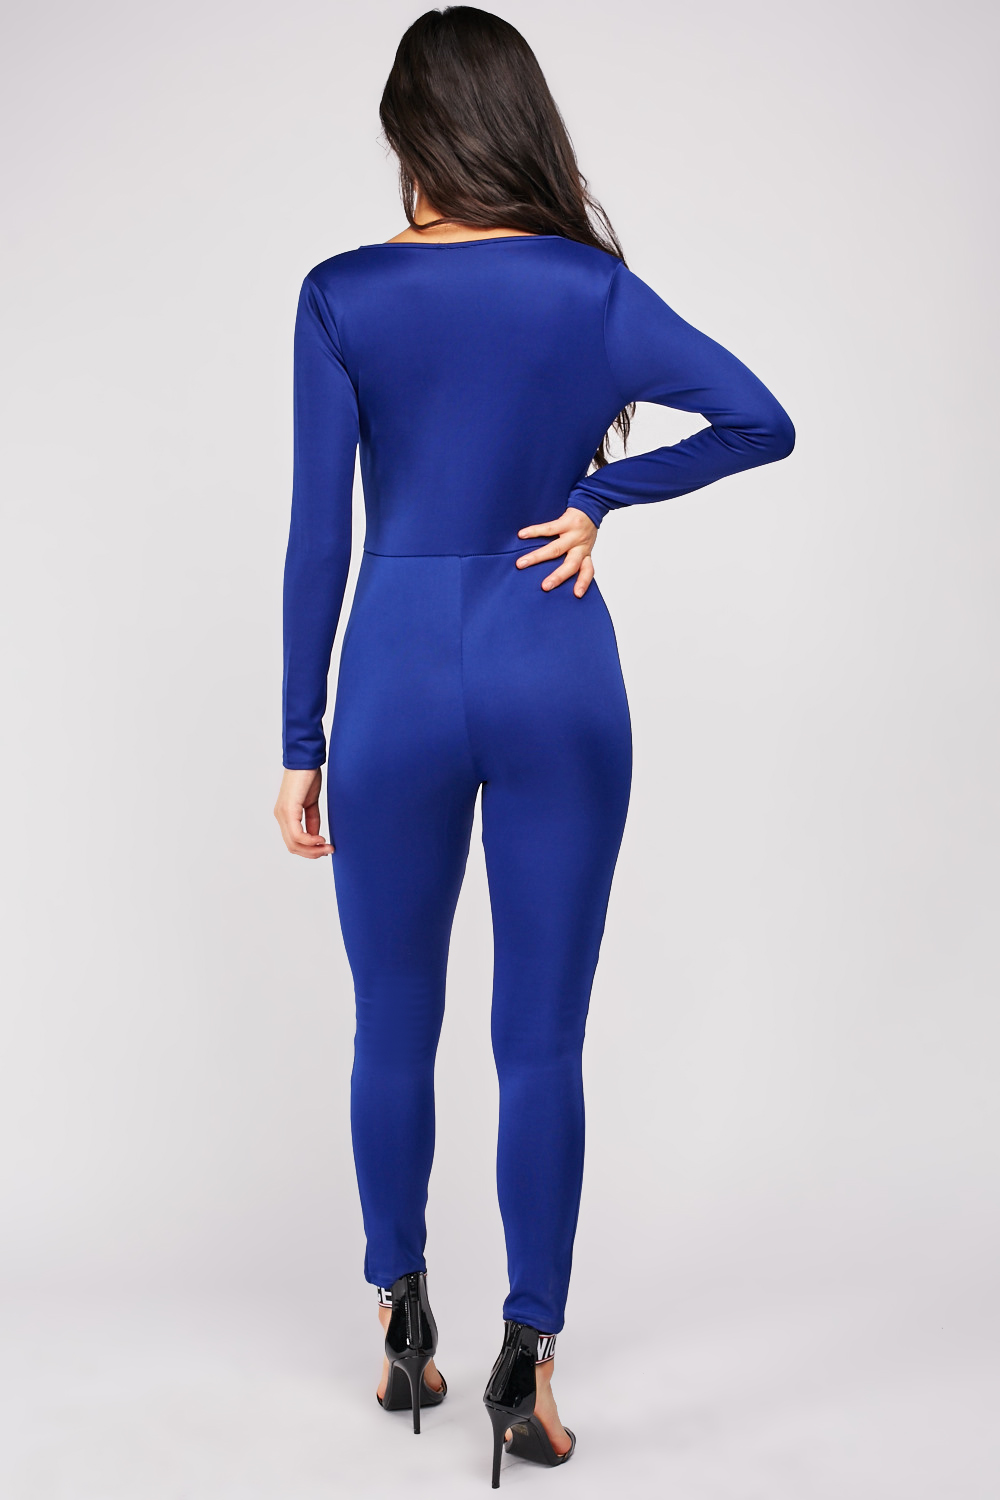 Wrap Royal Blue Jumpsuit - Just $7